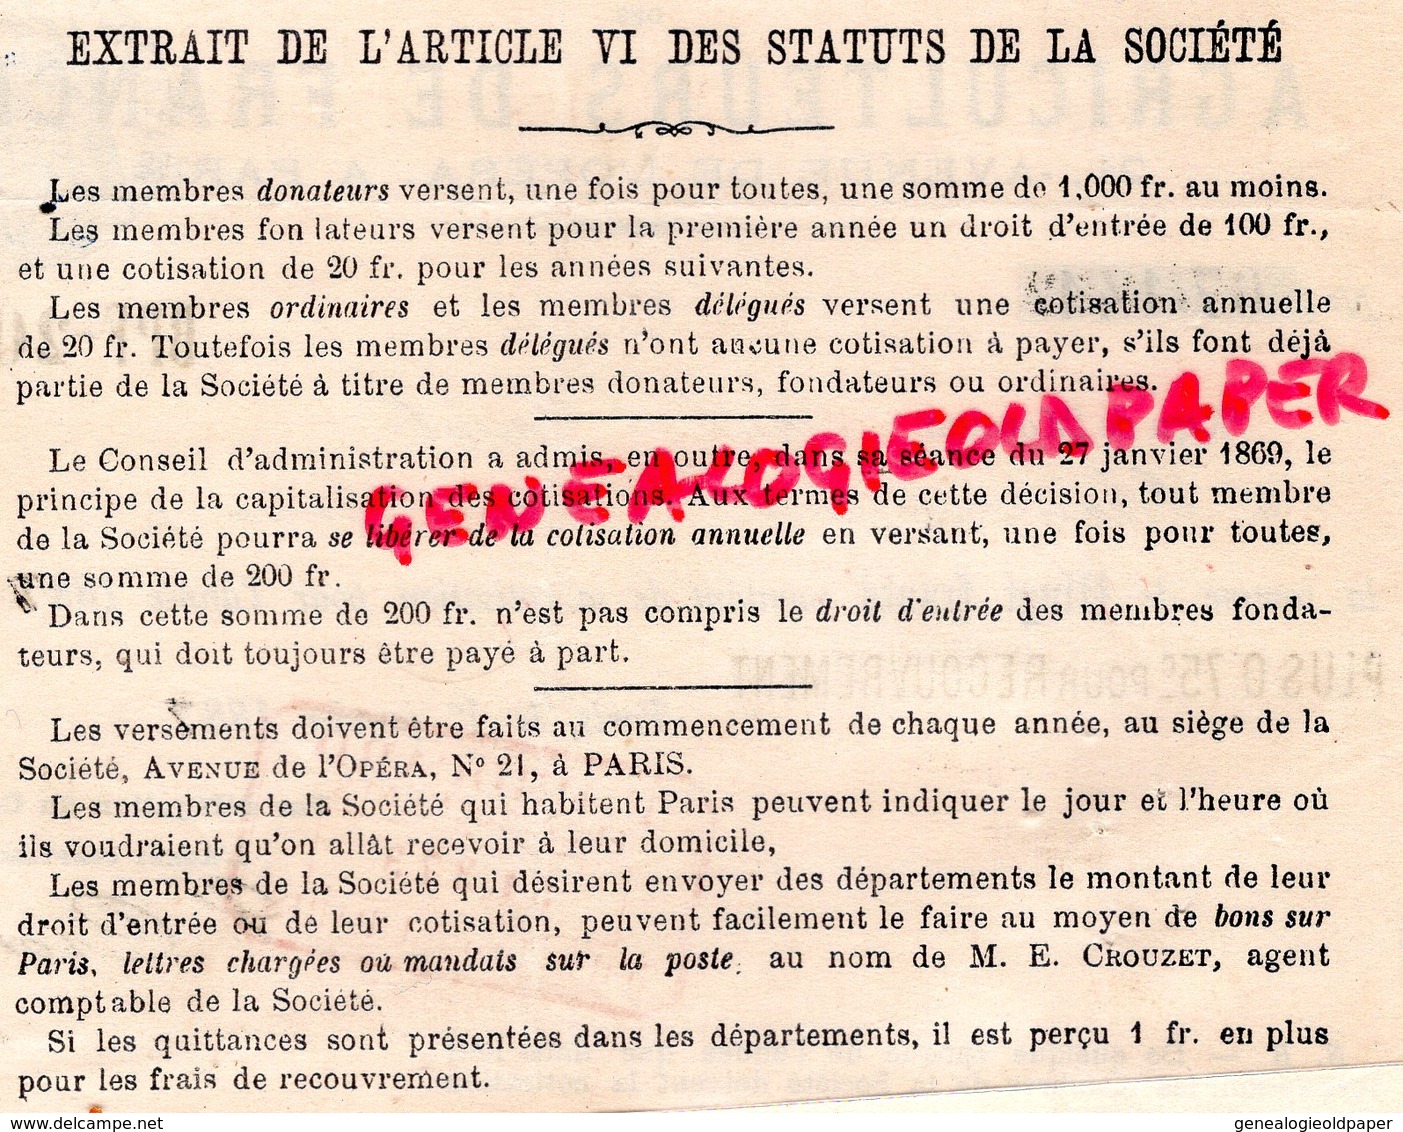 79- CHAMPDENIERS-75- PARIS - AGRICULTURE-RARE RECU SOCIETE AGRICULTEURS DE FRANCE- PAUL JACOB-1887-21 AVENUE OPERA - Agricoltura